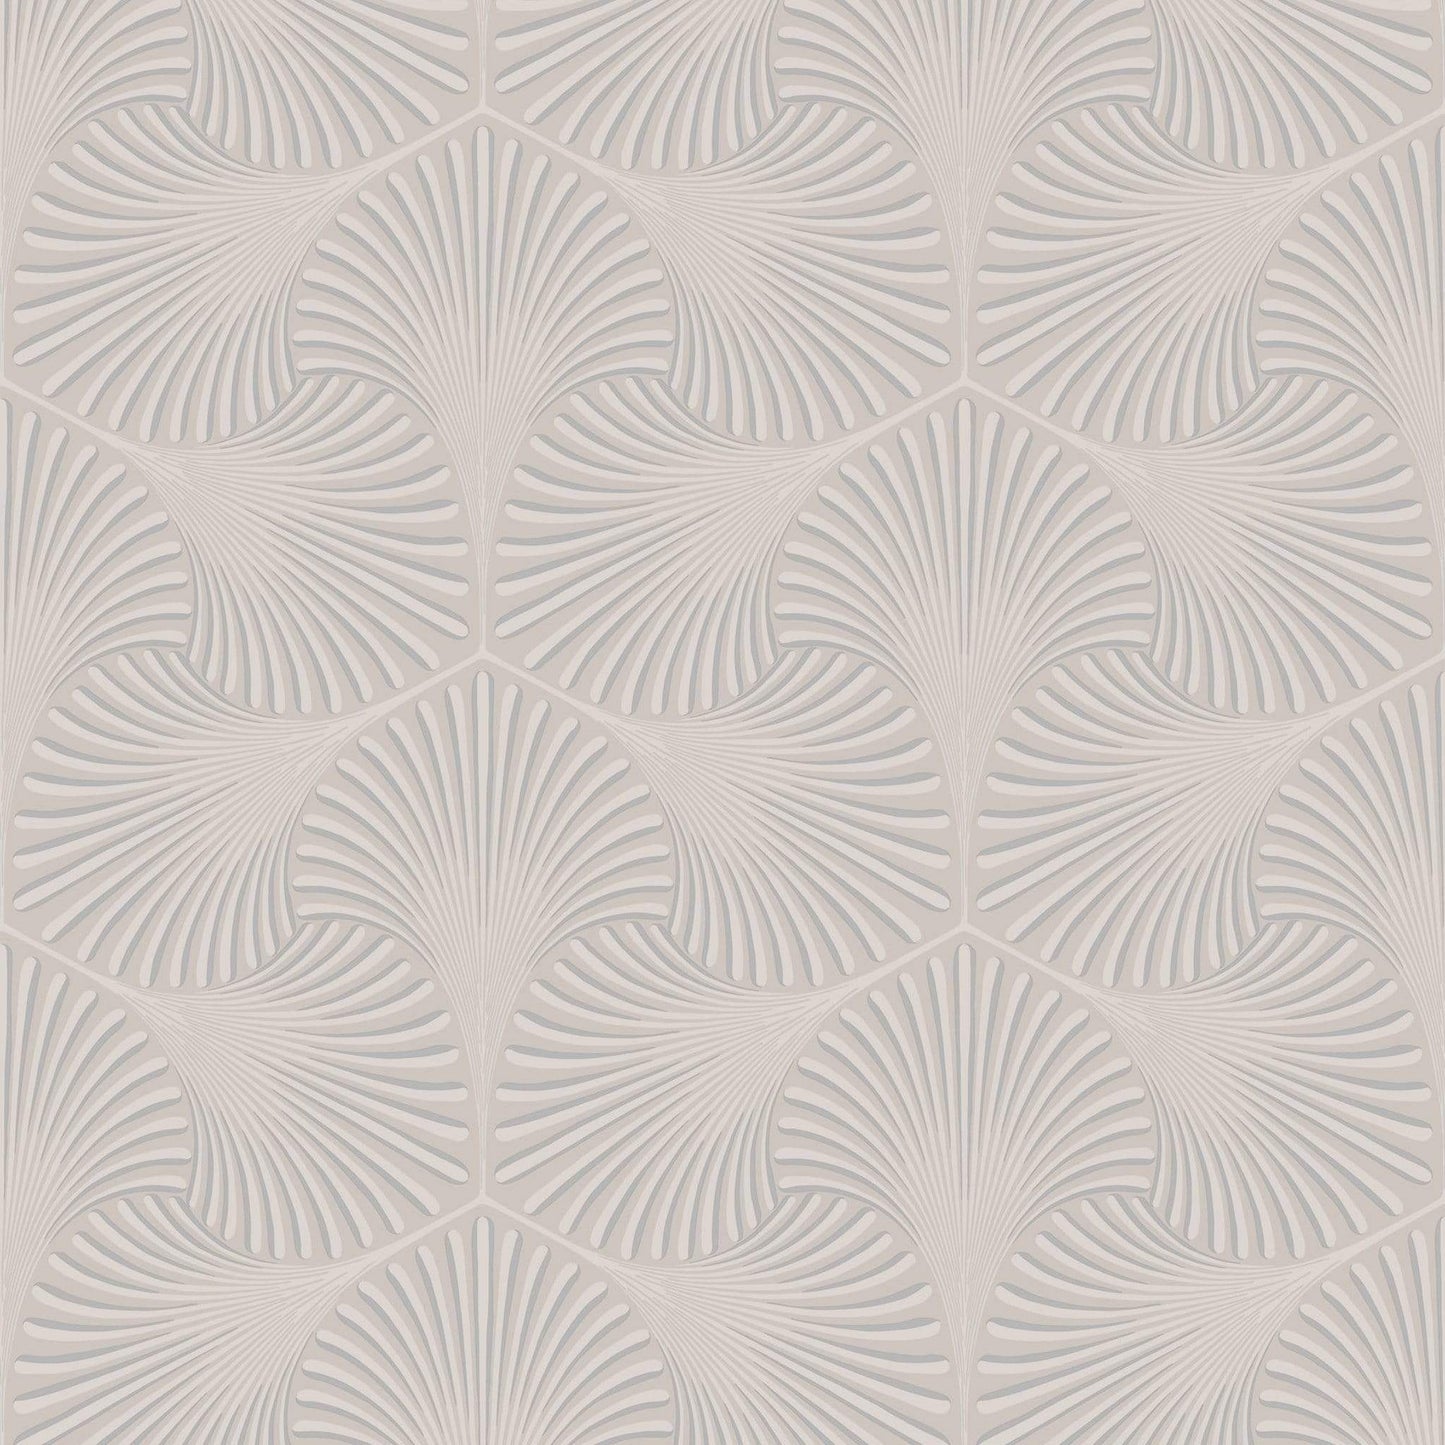 Wallpaper  -  Holden Varano Taupe Wallpaper - 36011  -  50154751